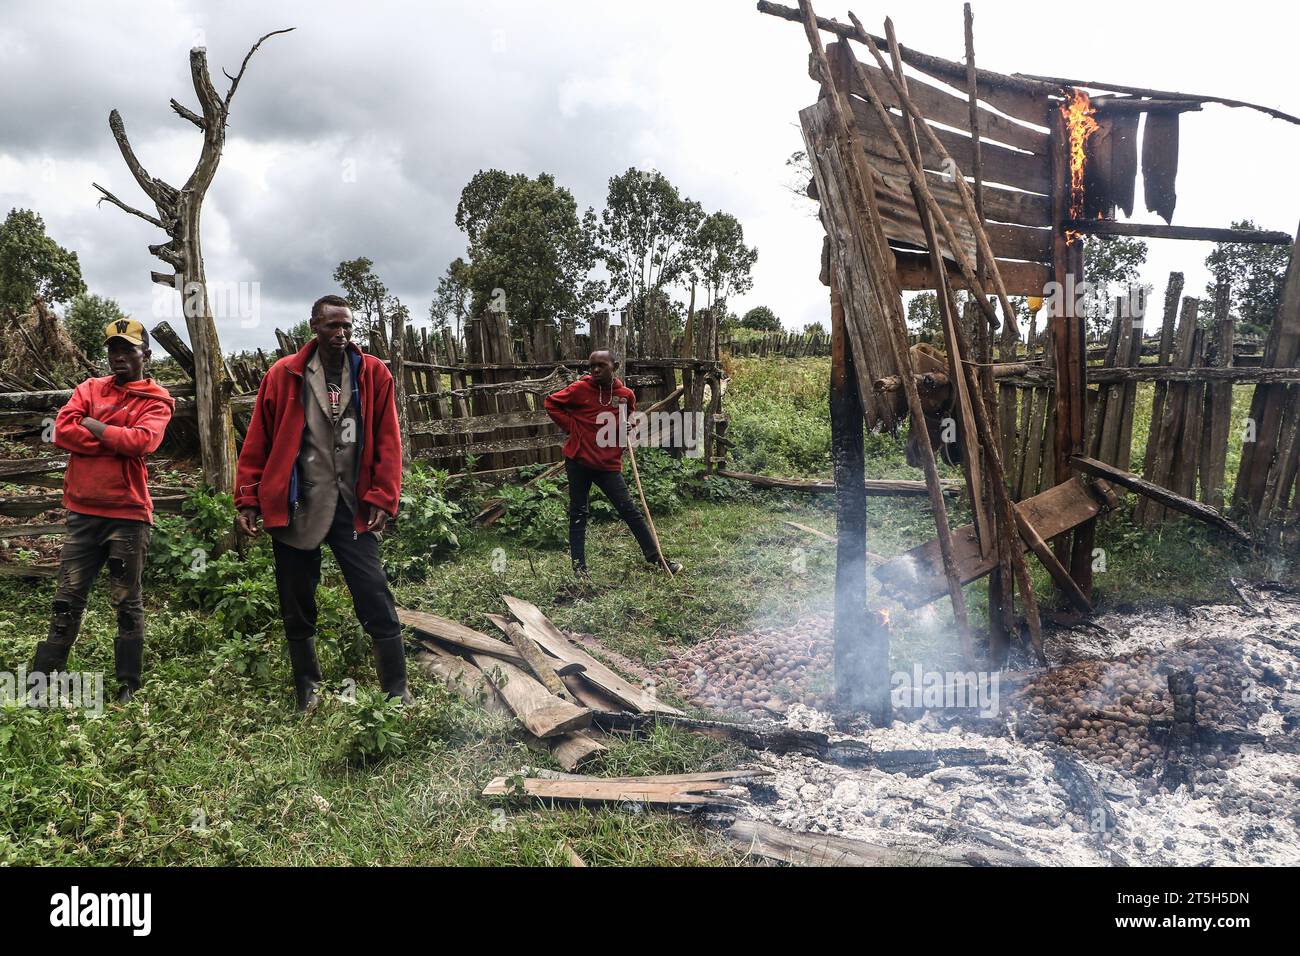 Kenyatta Ngusilo (C), miembro de la Comunidad Ogiek, observa cómo su almacén se quema en el bosque de Sasimwani Mau. Cientos de personas de la comunidad Ogiek han quedado sin hogar y en un frío mordaz después de que el Gobierno de Kenya emprendiera un ejercicio de desalojo para expulsar a los presuntos invasores del bosque Mau. Una declaración del Programa de Desarrollo del Pueblo Ogiek (OPDP) dijo que el desalojo de las comunidades forestales viola sus derechos humanos y pidió al gobierno que detenga inmediatamente el ejercicio. (Foto de James Wakibia/SOPA Images/Sipa USA) Foto de stock